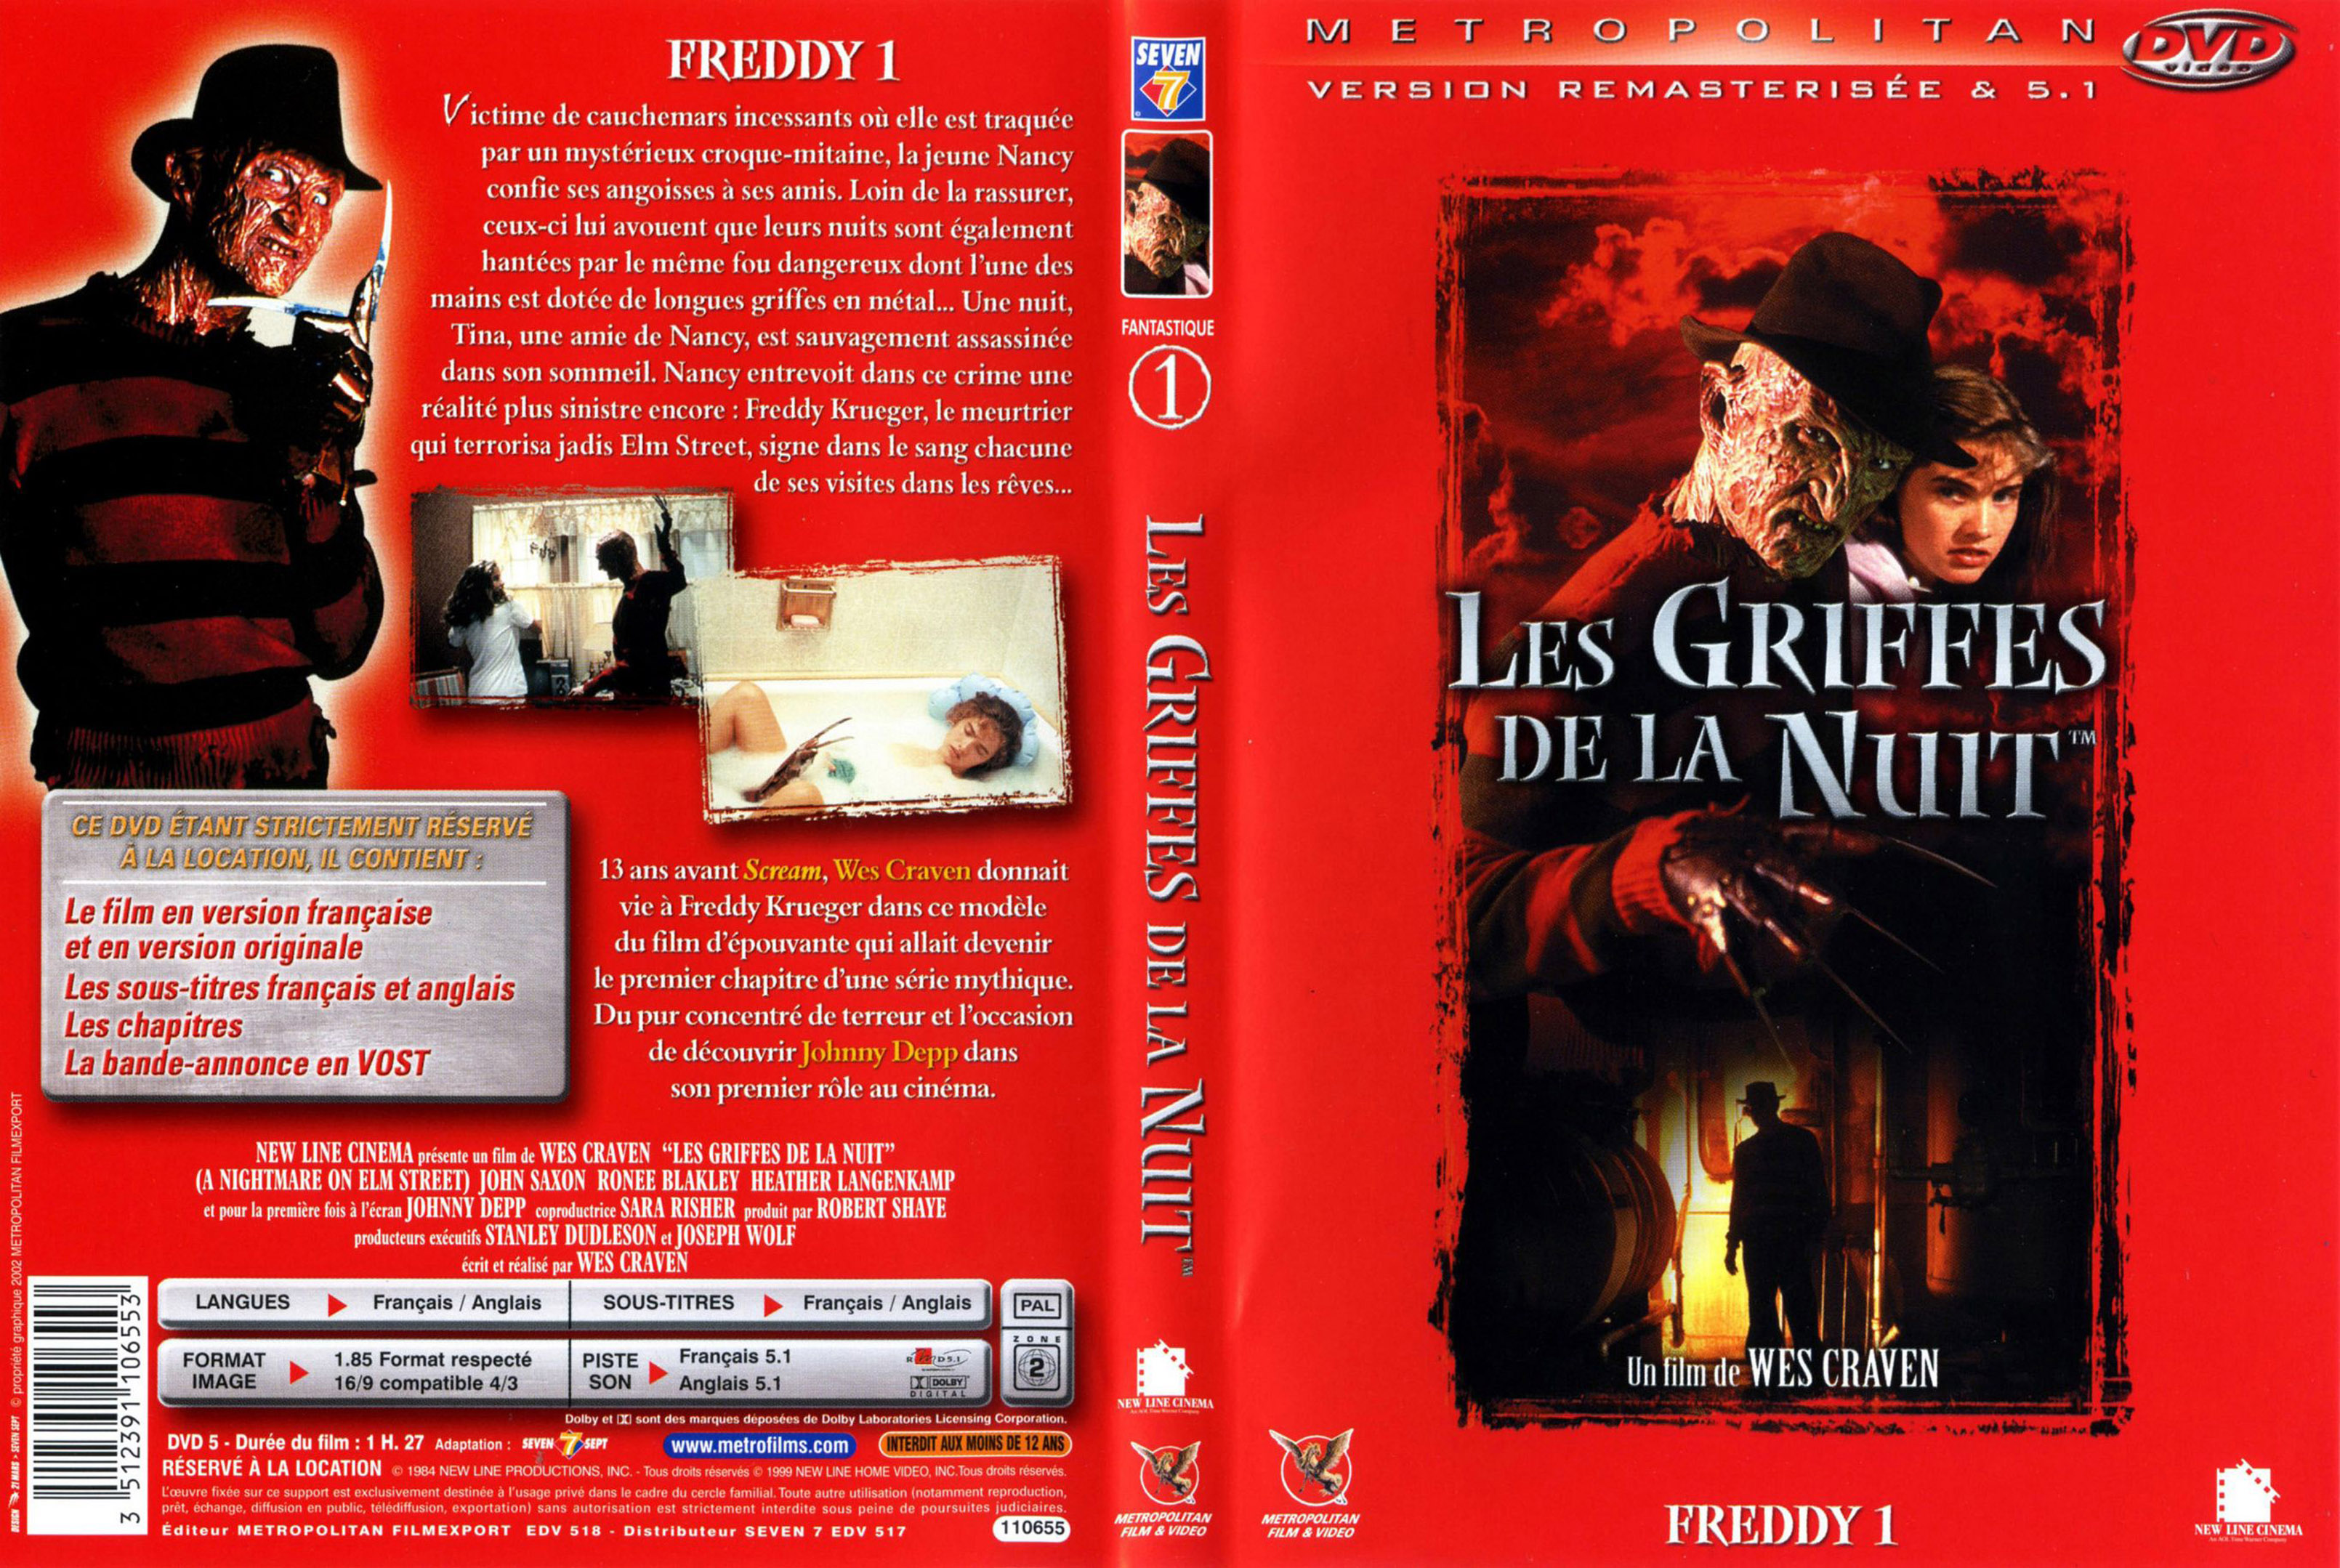 Jaquette DVD Freddy 1 Les griffes de la nuit v2